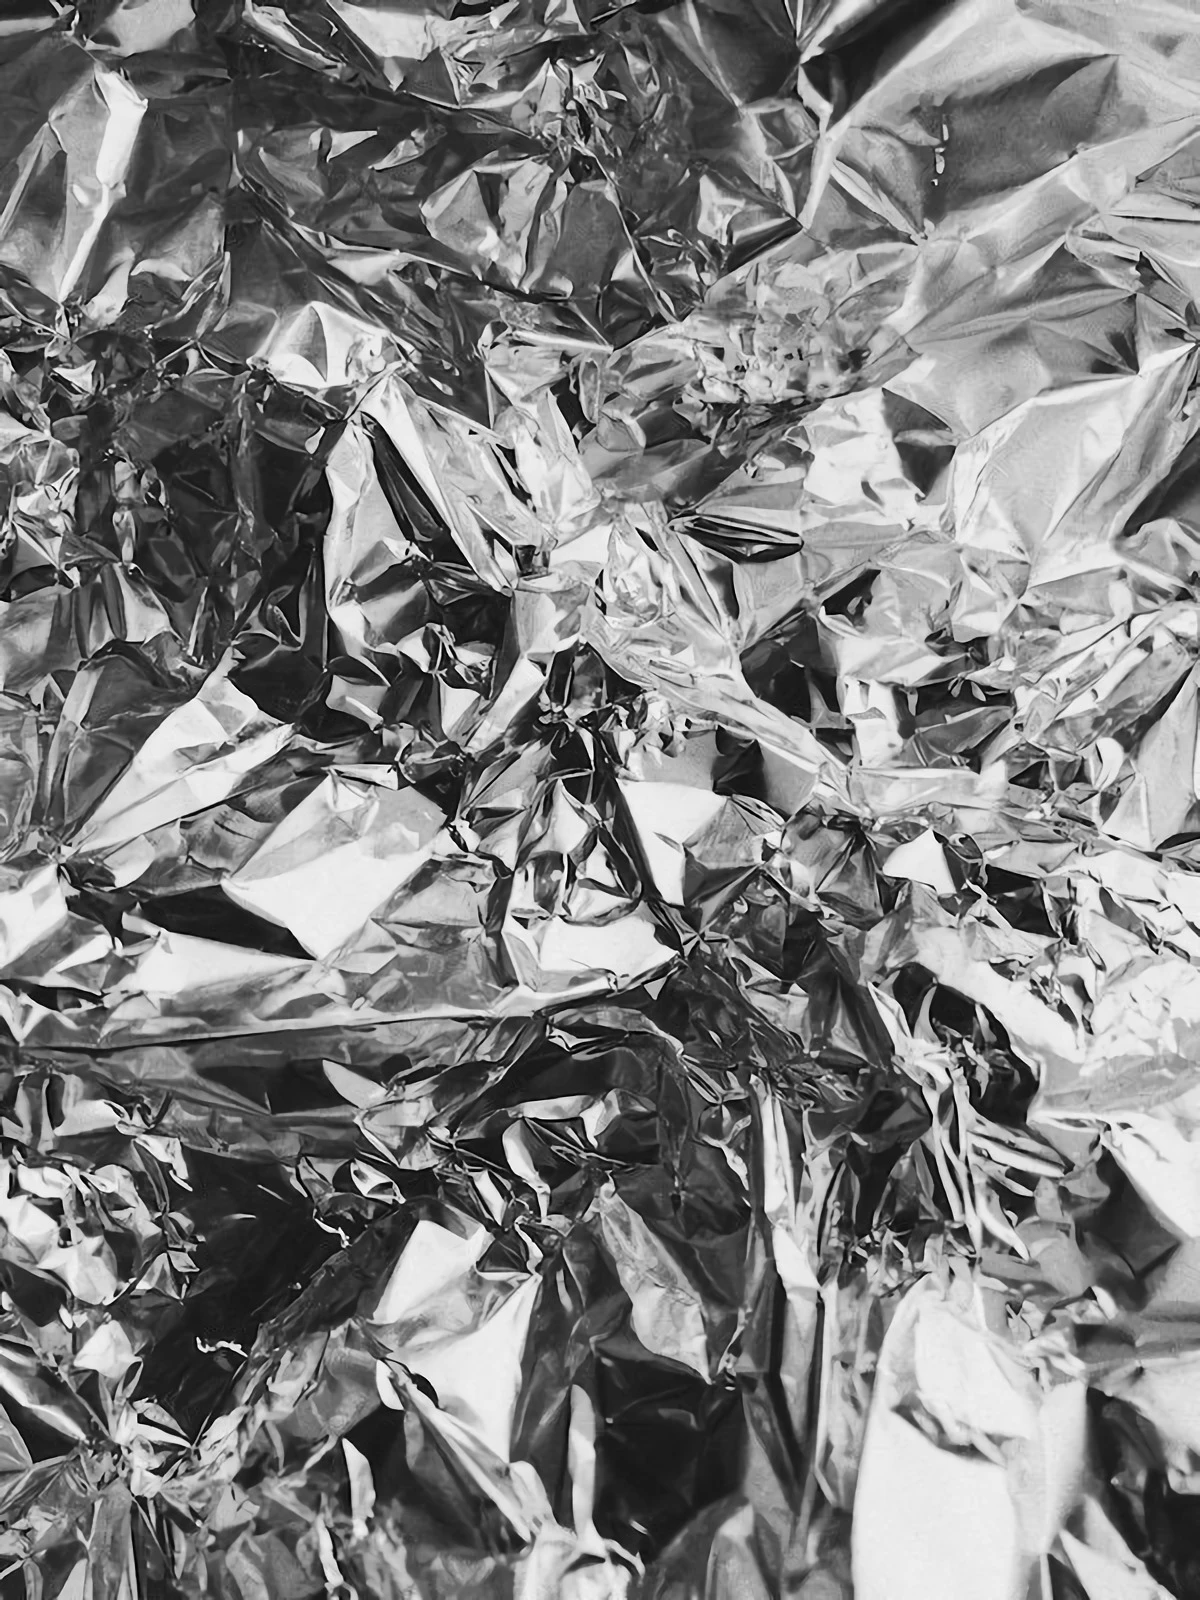 aluminum foil spread out